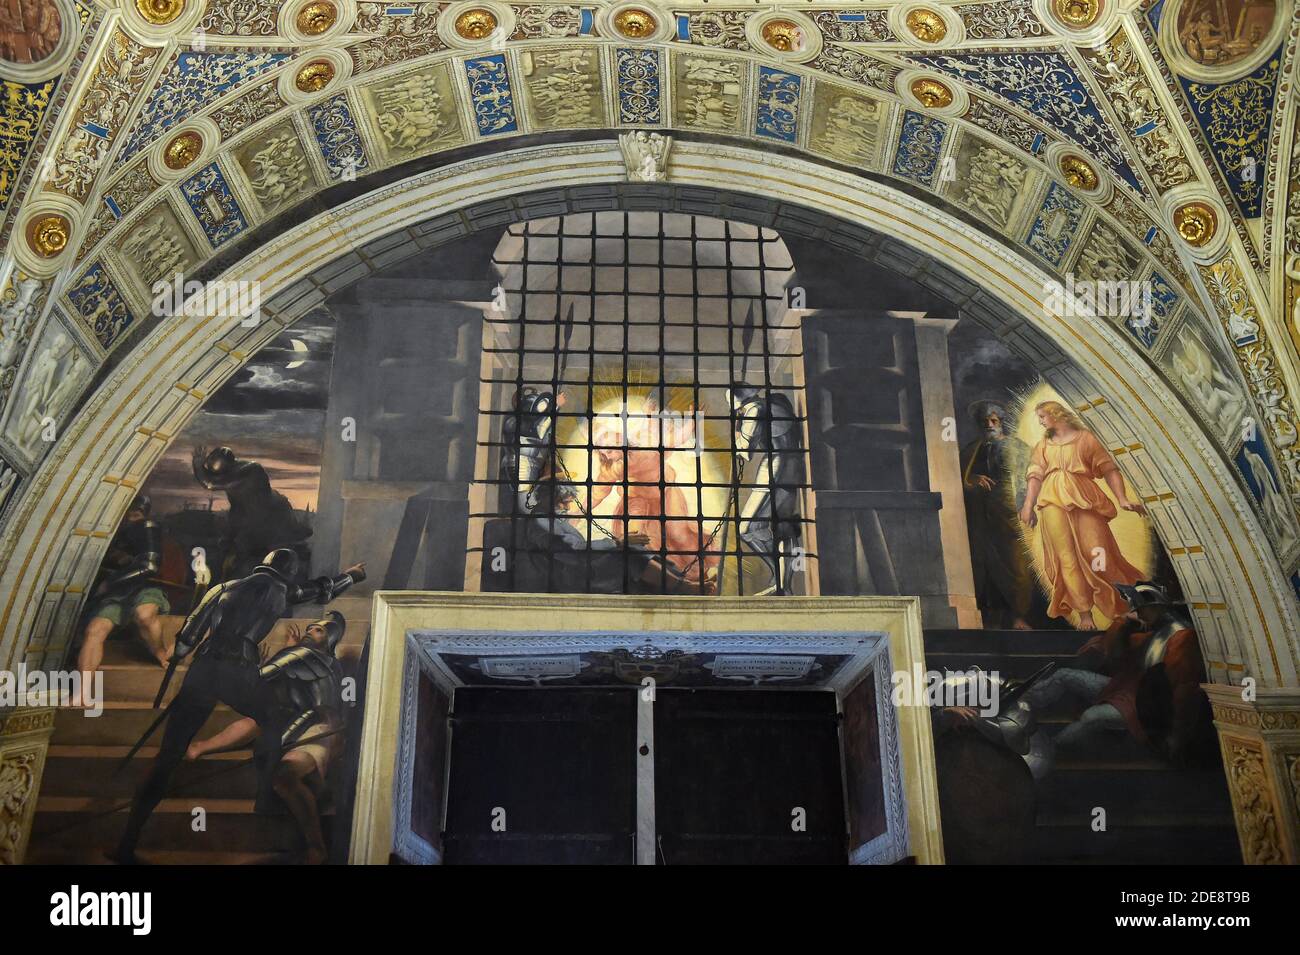 Die Befreiung des hl. Peterby Raphael (Raffaello Sanzio) (1483-1520) Saal des Heliodorus - Zimmer des Raffael (chambre d'Heliodore) "die Befreiung des hl. Petrus" zeigt den Fürsten der Apostel und den ersten Papst, der auf wundersame Weise von einem Engel aus dem Gefängnis gerettet wurde, während die Wachen schlafen (Apostelgeschichte 12: 5-12). Die Szene bezieht sich auf Julius II. (Papst von 1503 bis 1513), der vor seiner Wahl zum Papst der Titularkardinal des hl. Petrus in Ketten war. Bei der Feier des Lichts konfrontiert Raphael das göttliche Licht des Engels mit dem der Morgenröte, des Mondes, der Fackeln und ihrer Reflecti Stockfoto